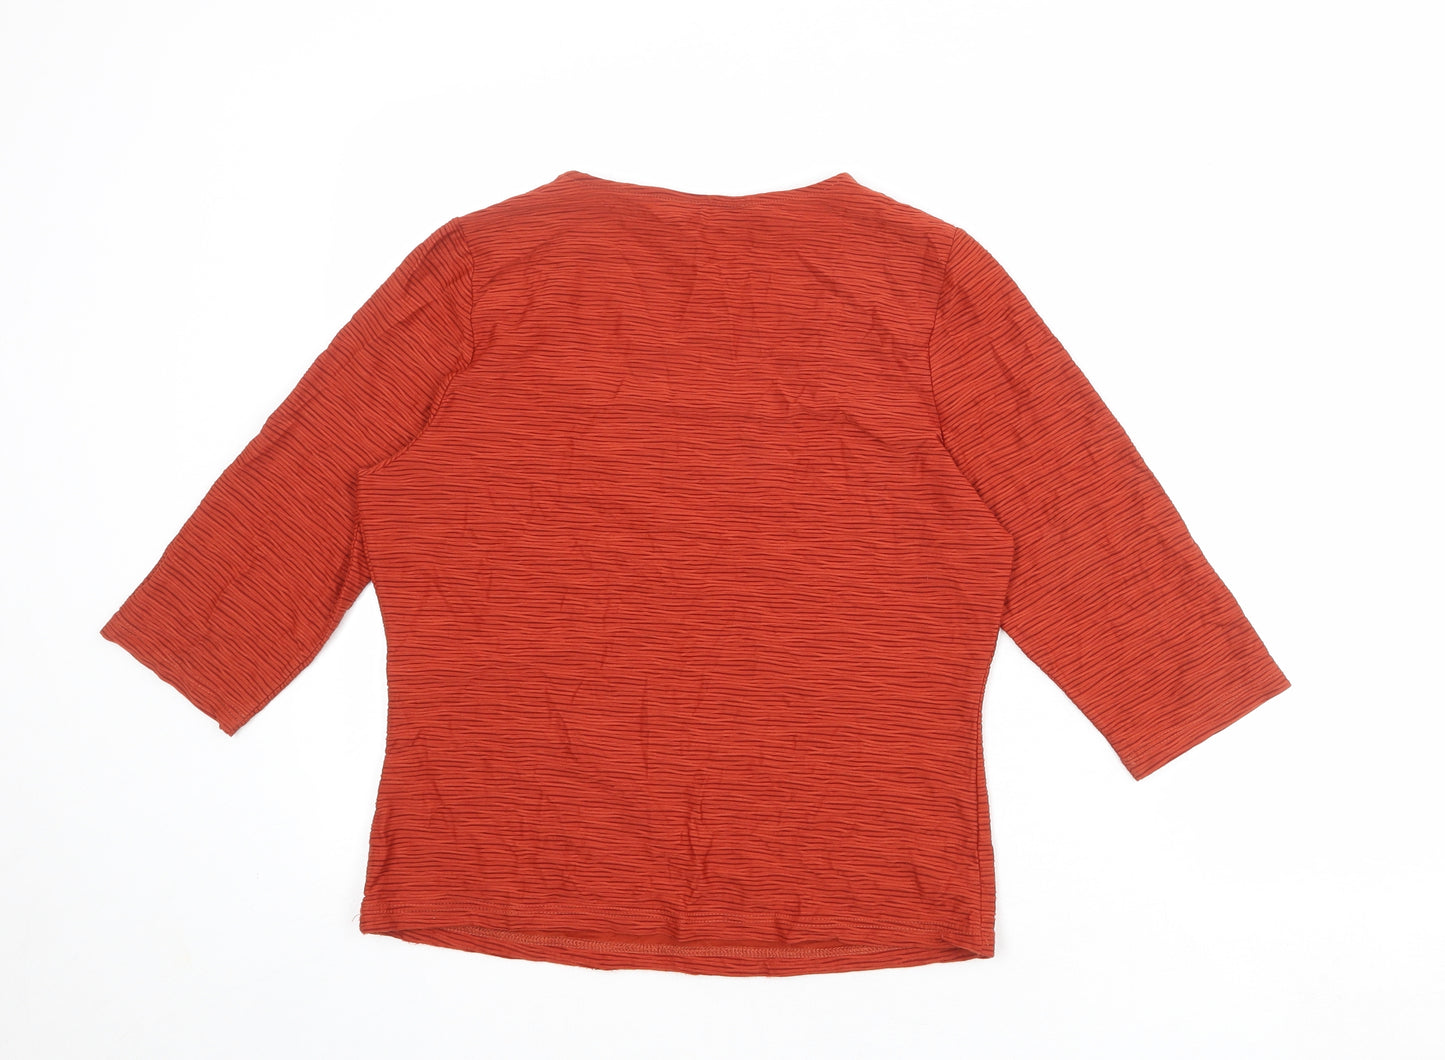 Alex & Co Womens Orange Geometric Polyamide Basic Blouse Size 12 V-Neck